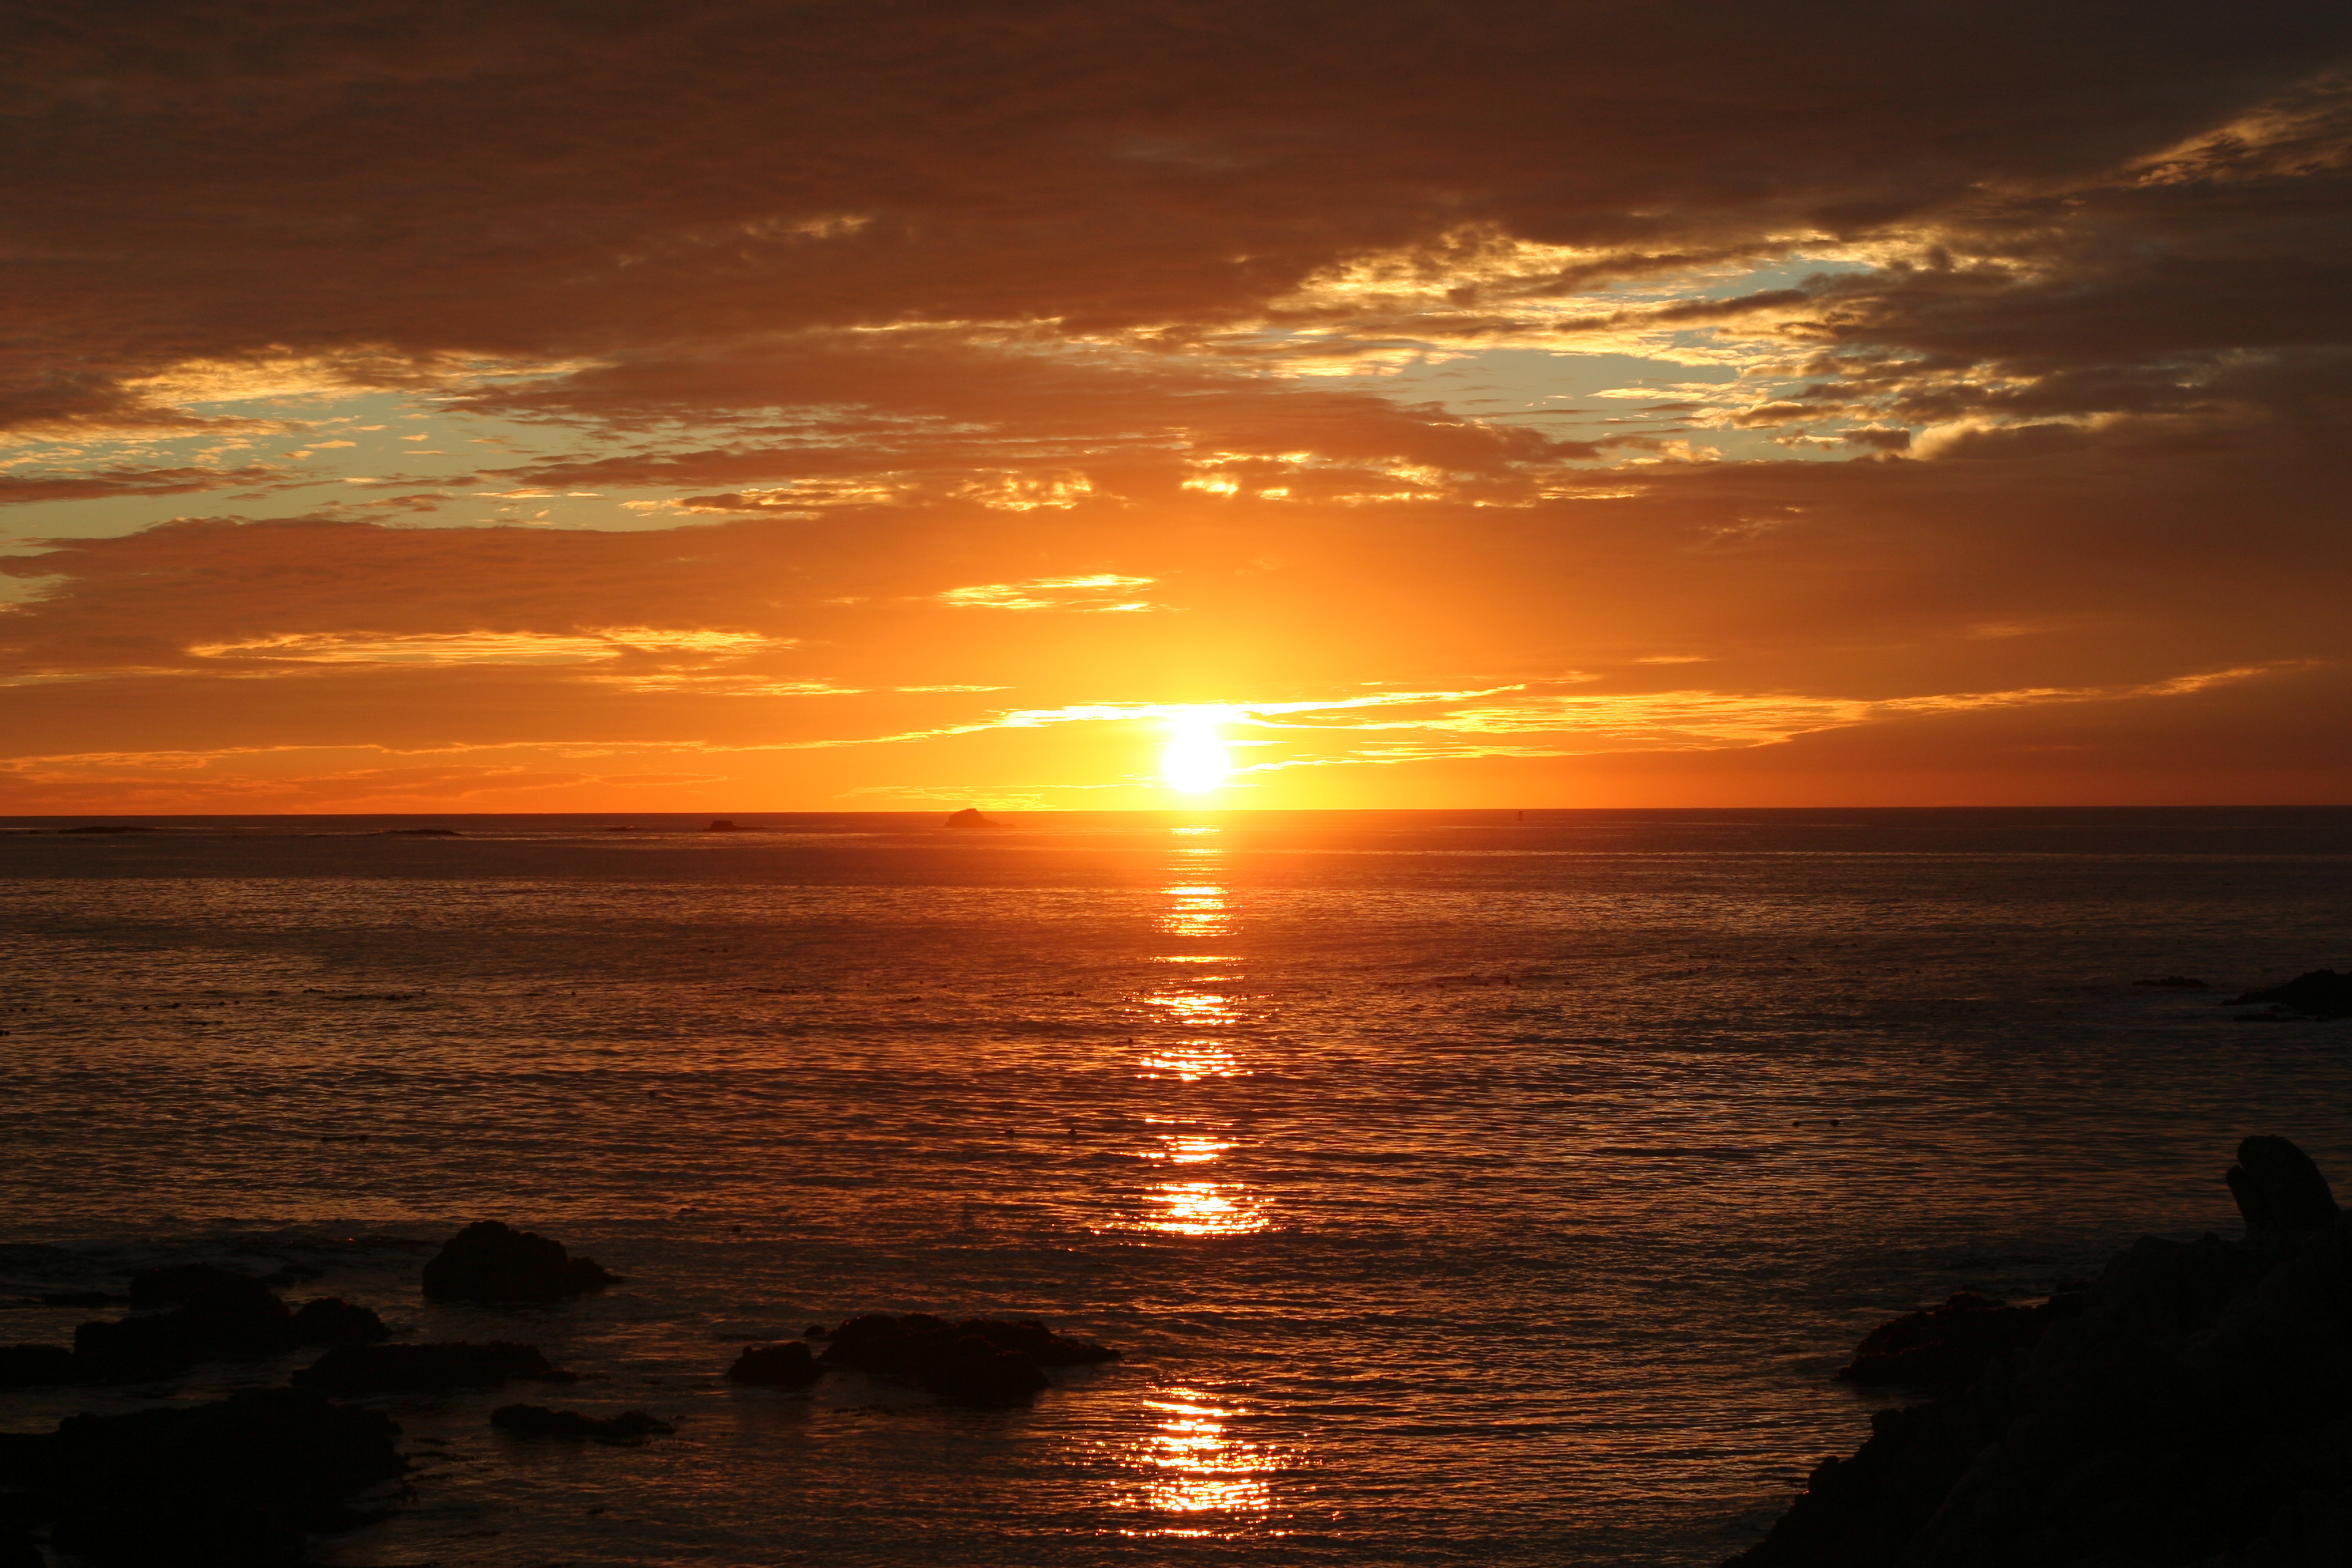 Ocean Sunrise Sunset Wallpaper Image